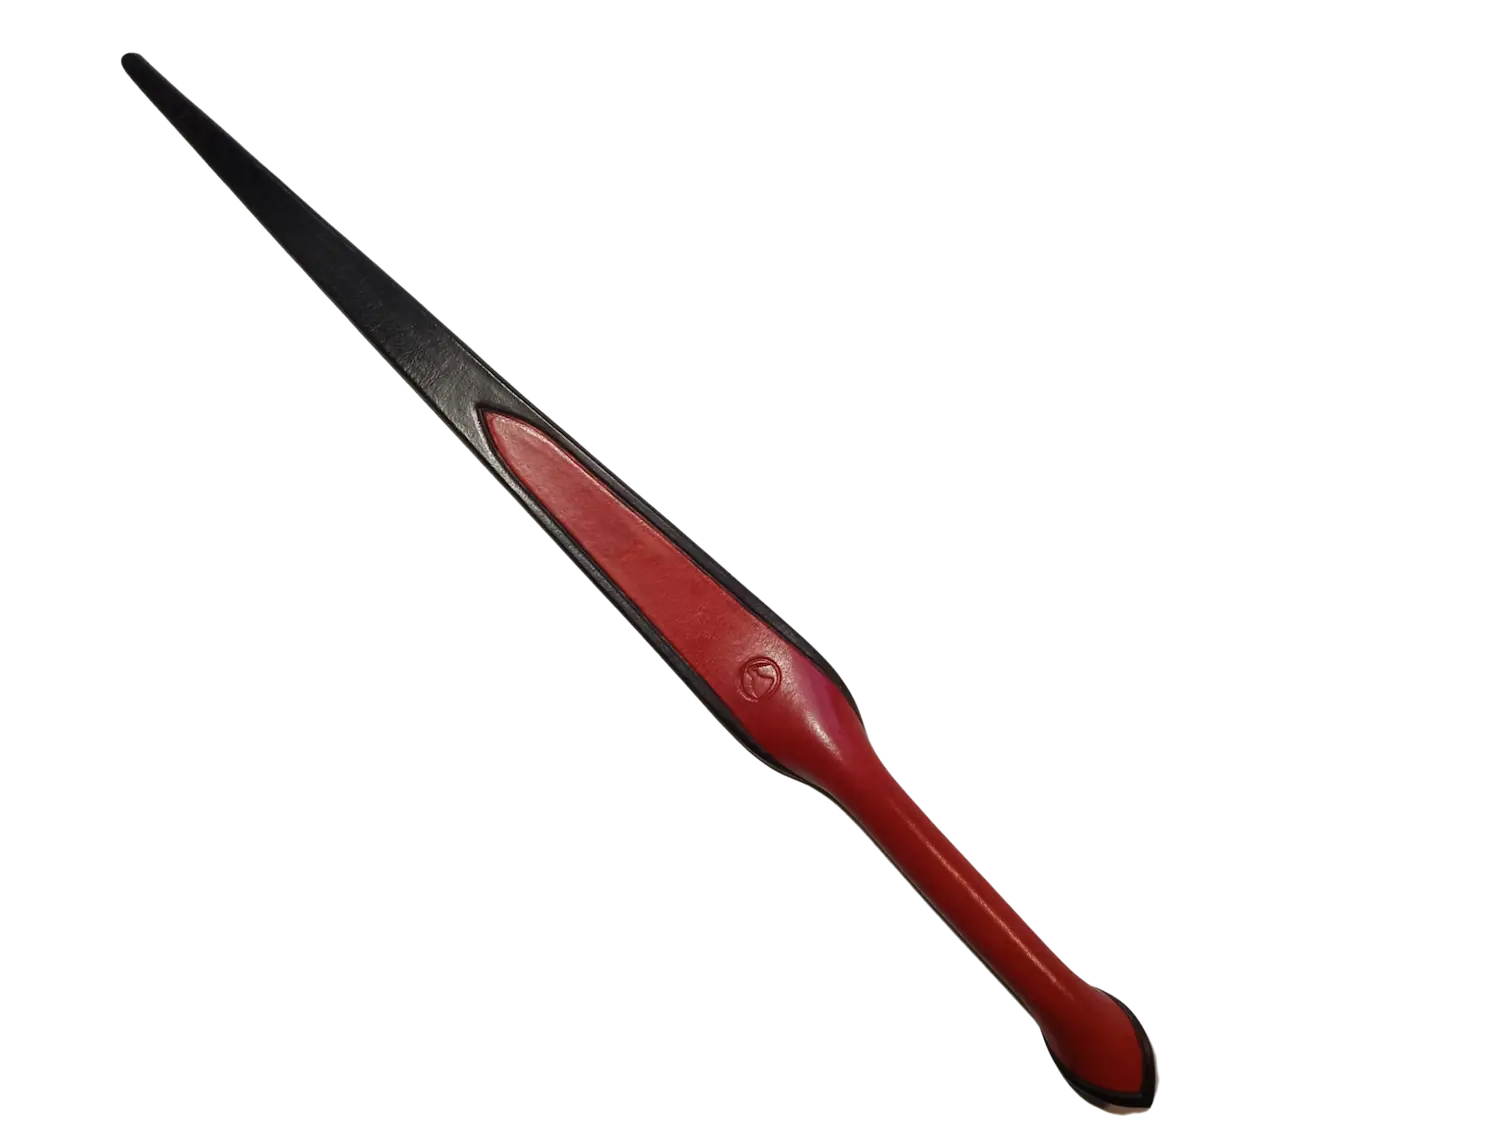 Spankingový příbor - nůž. Plácačka ze silné hovězí kůže ručně barvená a šitá. Cena 3000 Kč